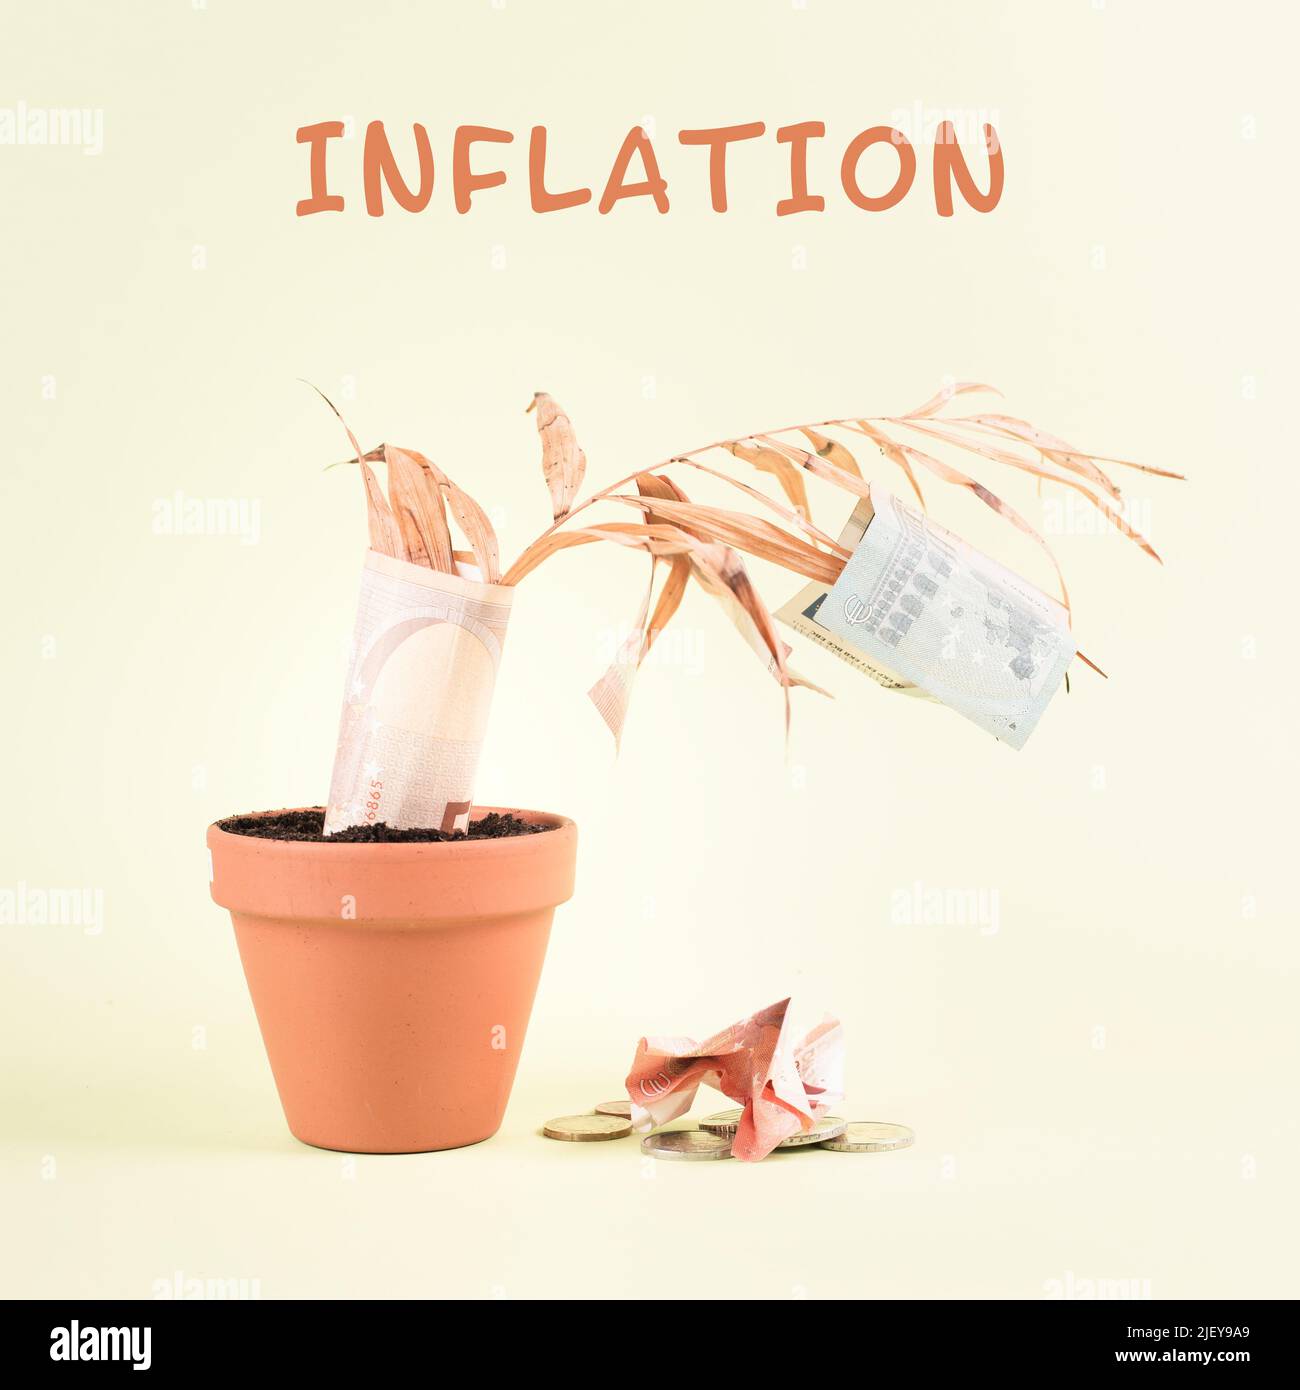 Impianto appassito in un vaso con banconote in euro che cadono dalle foglie, crollo finanziario, crisi di inflazione, depressione economica globale, fallimento delle imprese Foto Stock